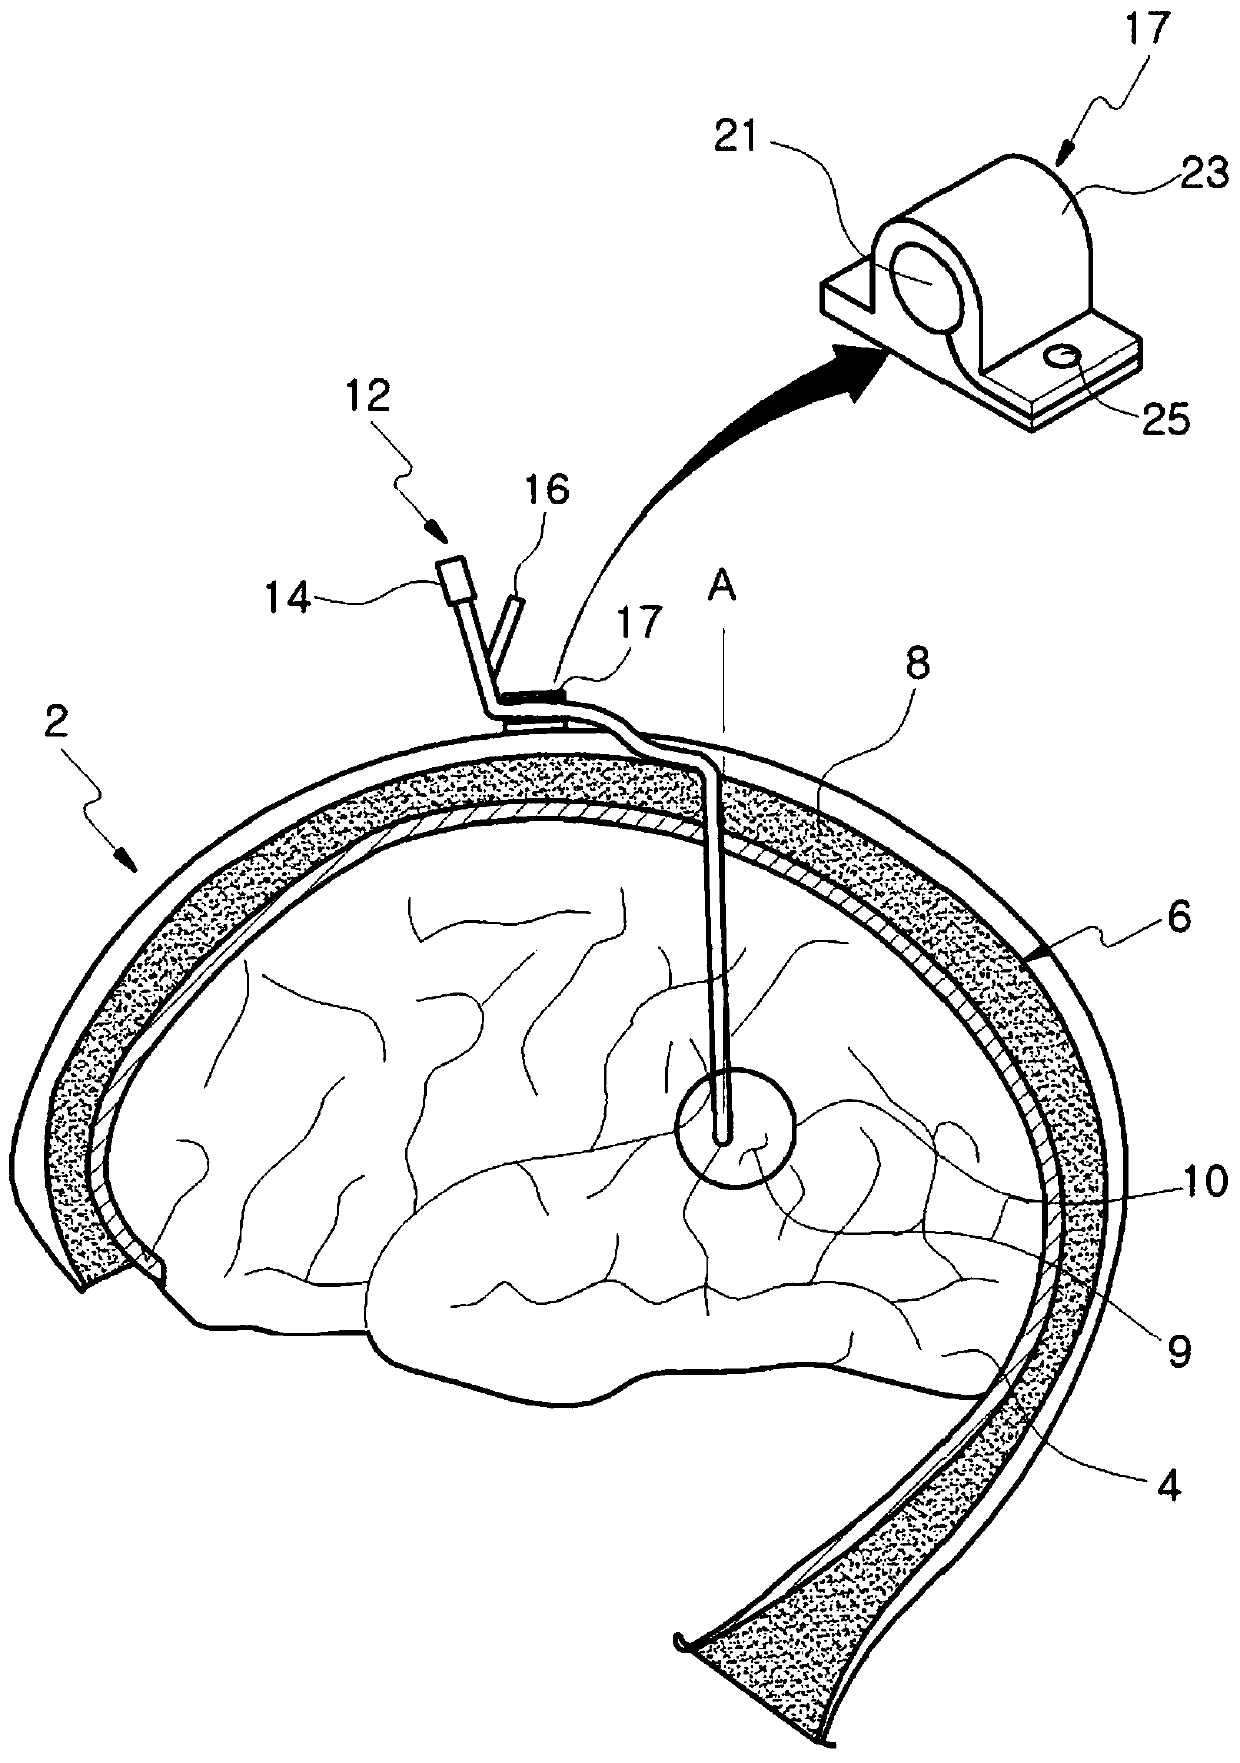 cranial catheter device